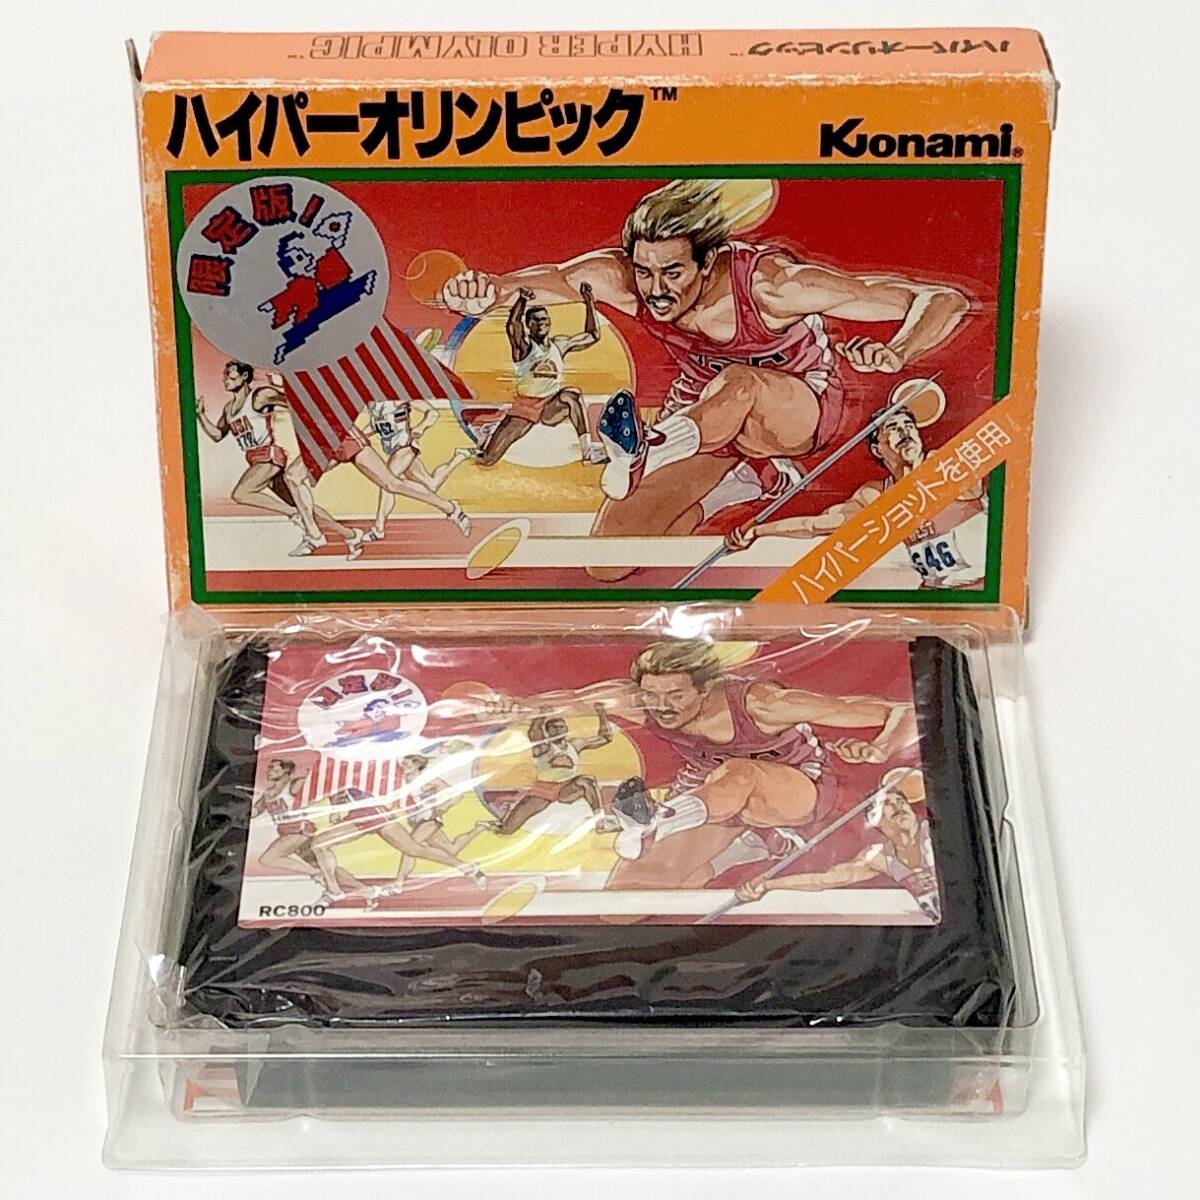 ファミコン ハイパーオリンピック 殿様版 箱説付き 痛みあり コナミ Nintendo Famicom Hyper Olympic Tonosama Edition CIB Tested Konami